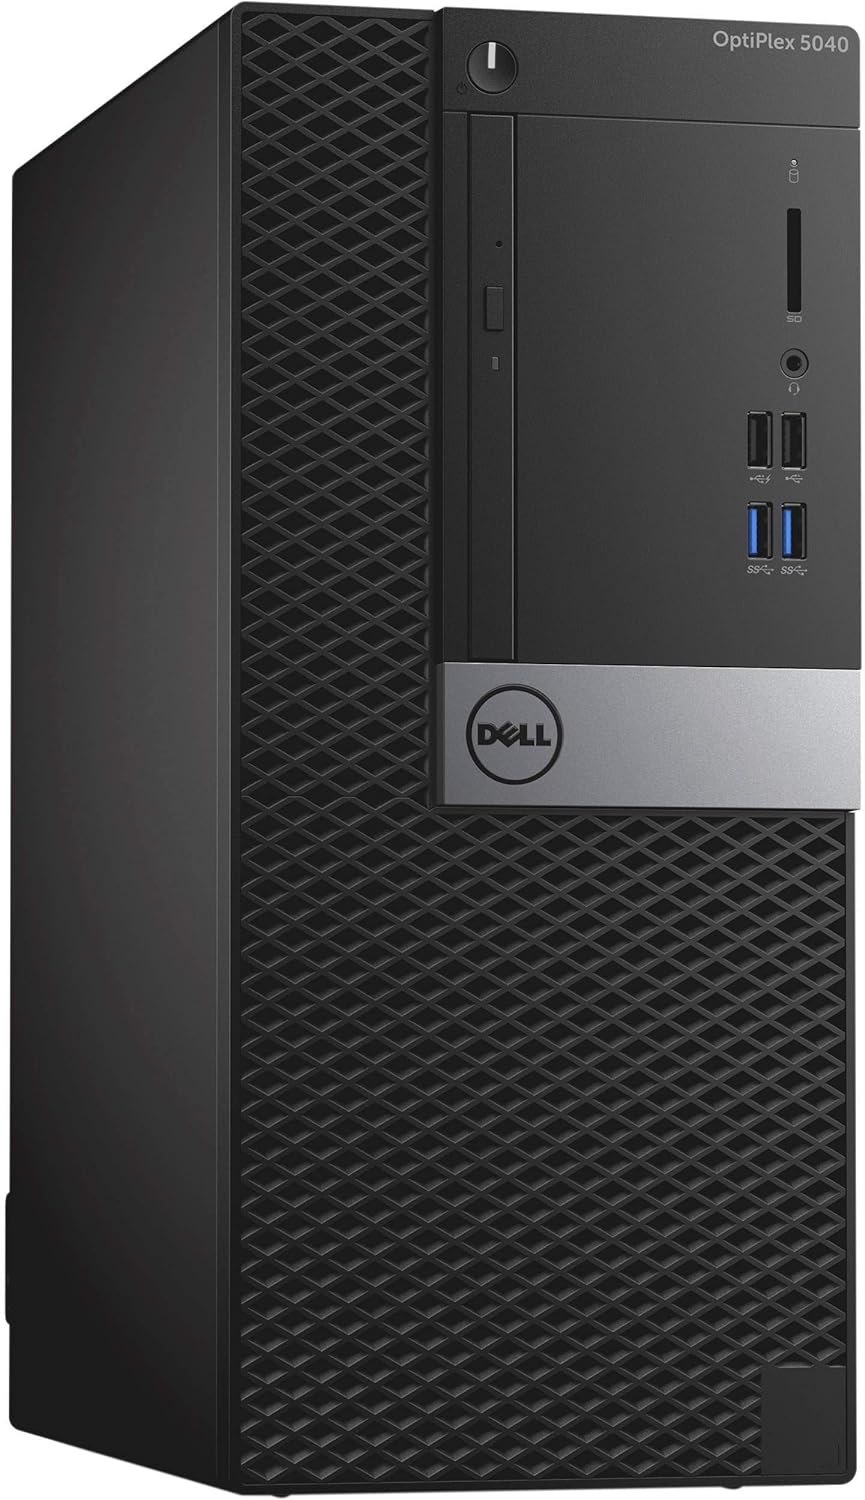 Dell Optiplex 5040 Mini Tower PC, Intel Core i7-6700, 1 TB HDD, 8 GB RAM, Intel HD Graphics, DOS - Black